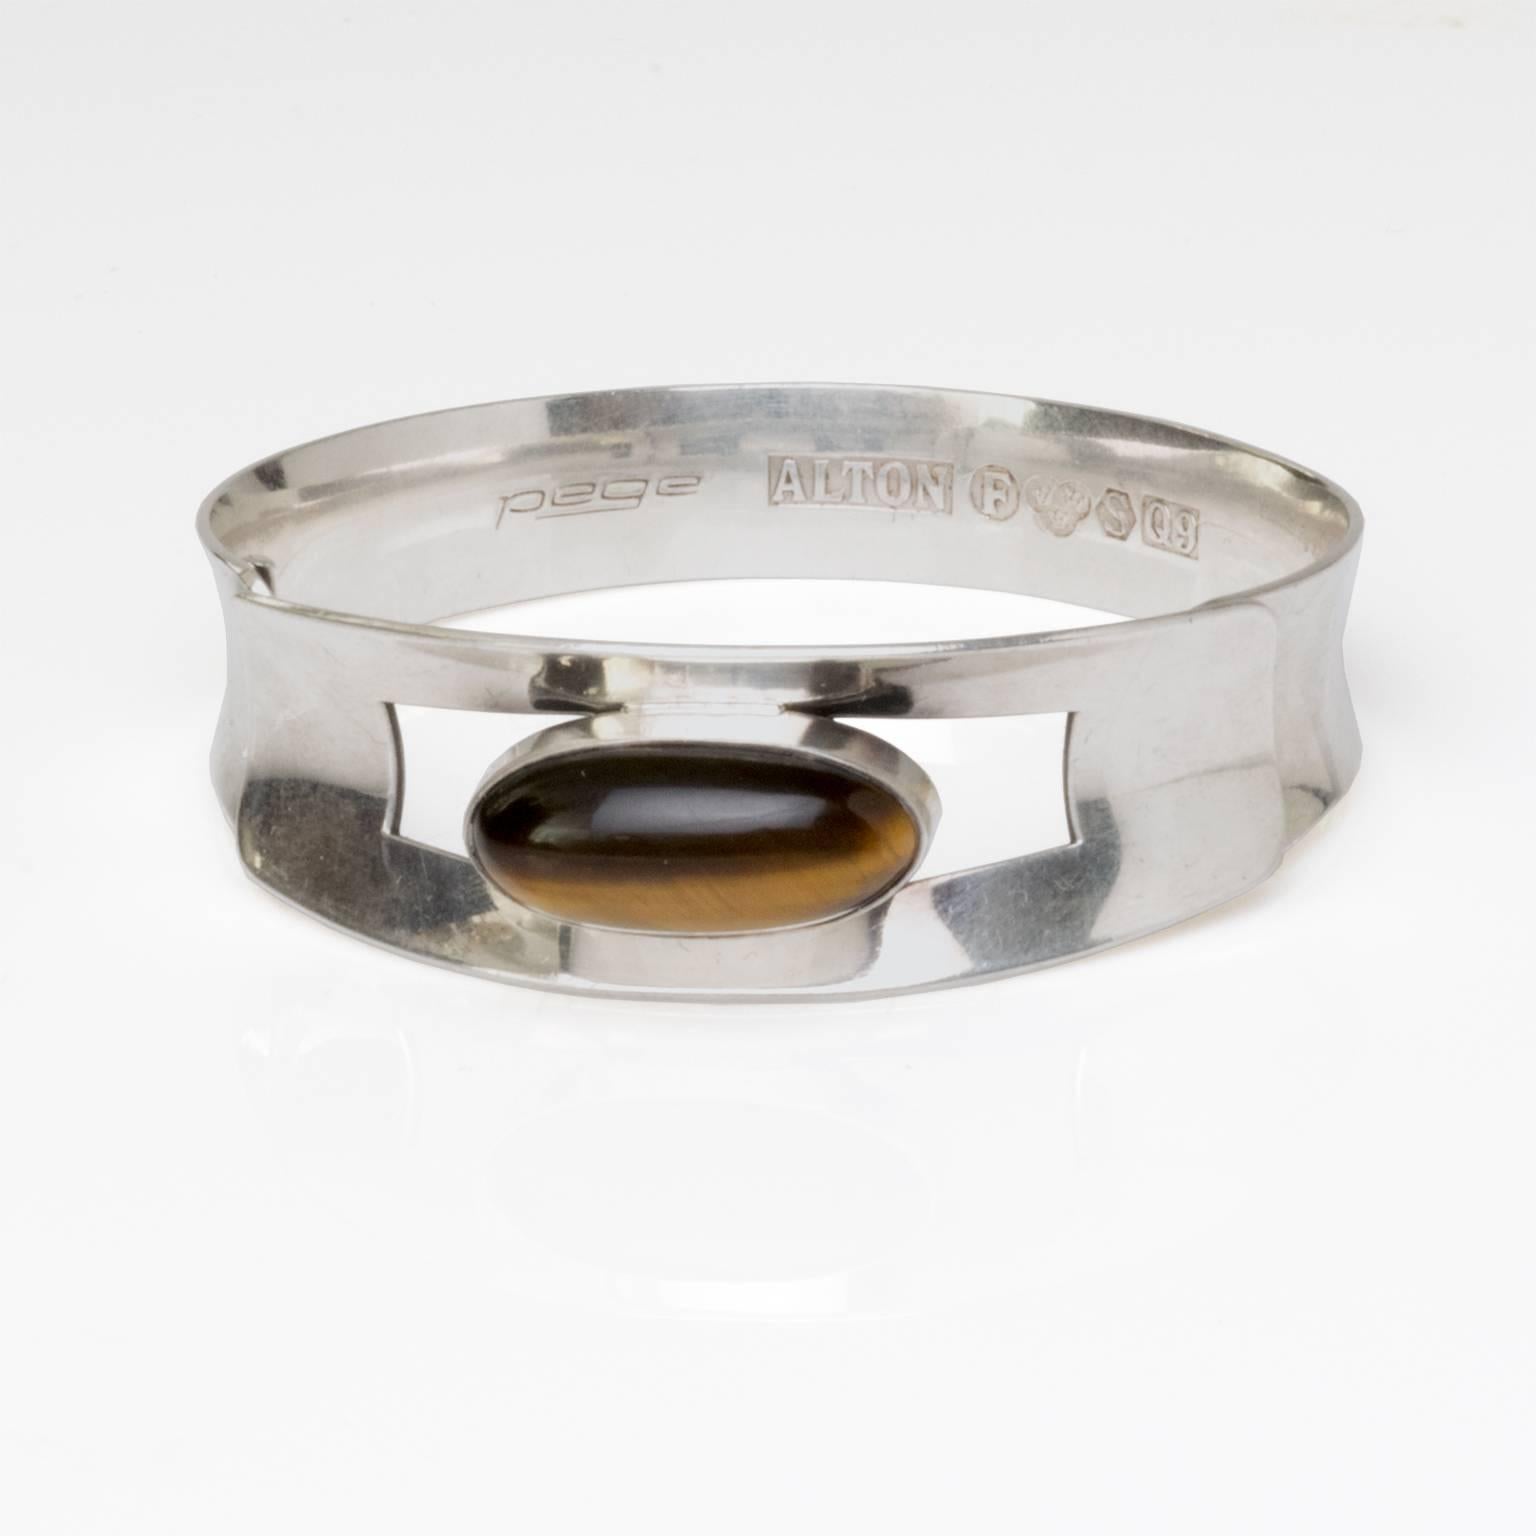 Skandinavisches modernes Silberarmband mit ovalem Tigerauge Stein. Signiert Pege, hergestellt von Alton, Schweden, 1966.
Misst Durchmesser 2,5